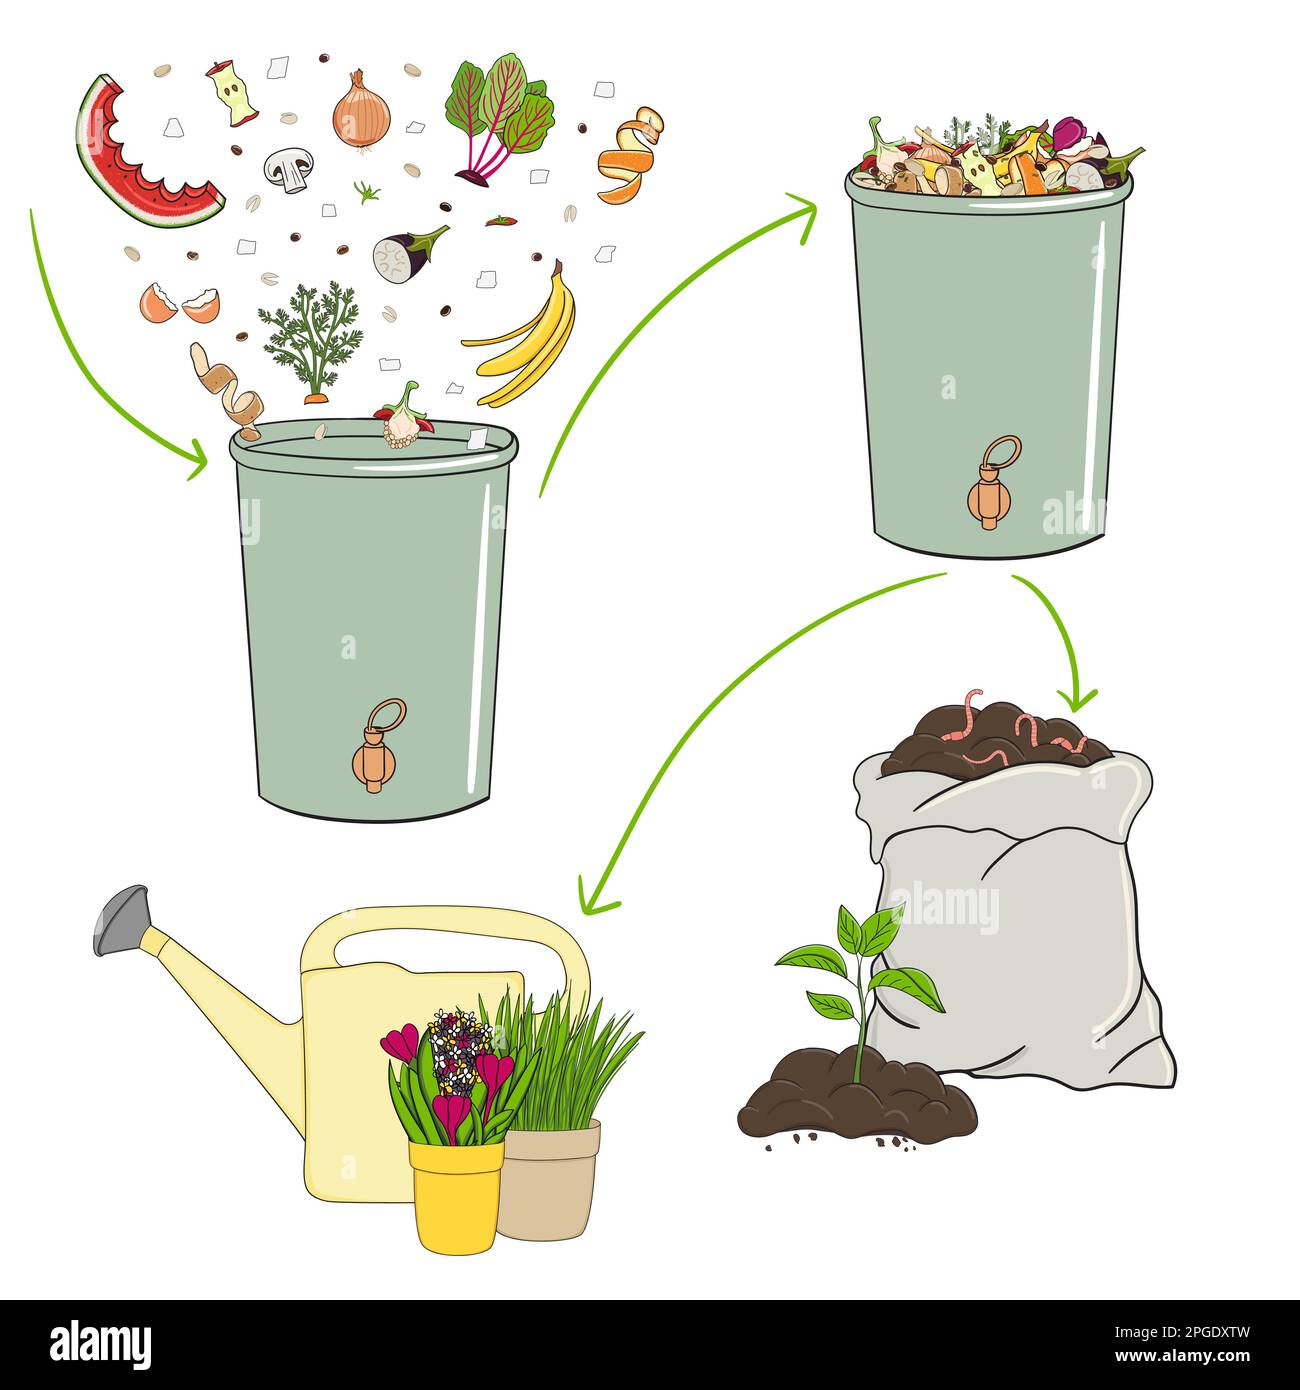 Schema di riciclaggio di rifiuti organici da raccogliere scarti di cucina per utilizzare compost e compost tè per il giardinaggio. Riciclaggio dei rifiuti organici. Zero rifiuti con Illustrazione Vettoriale